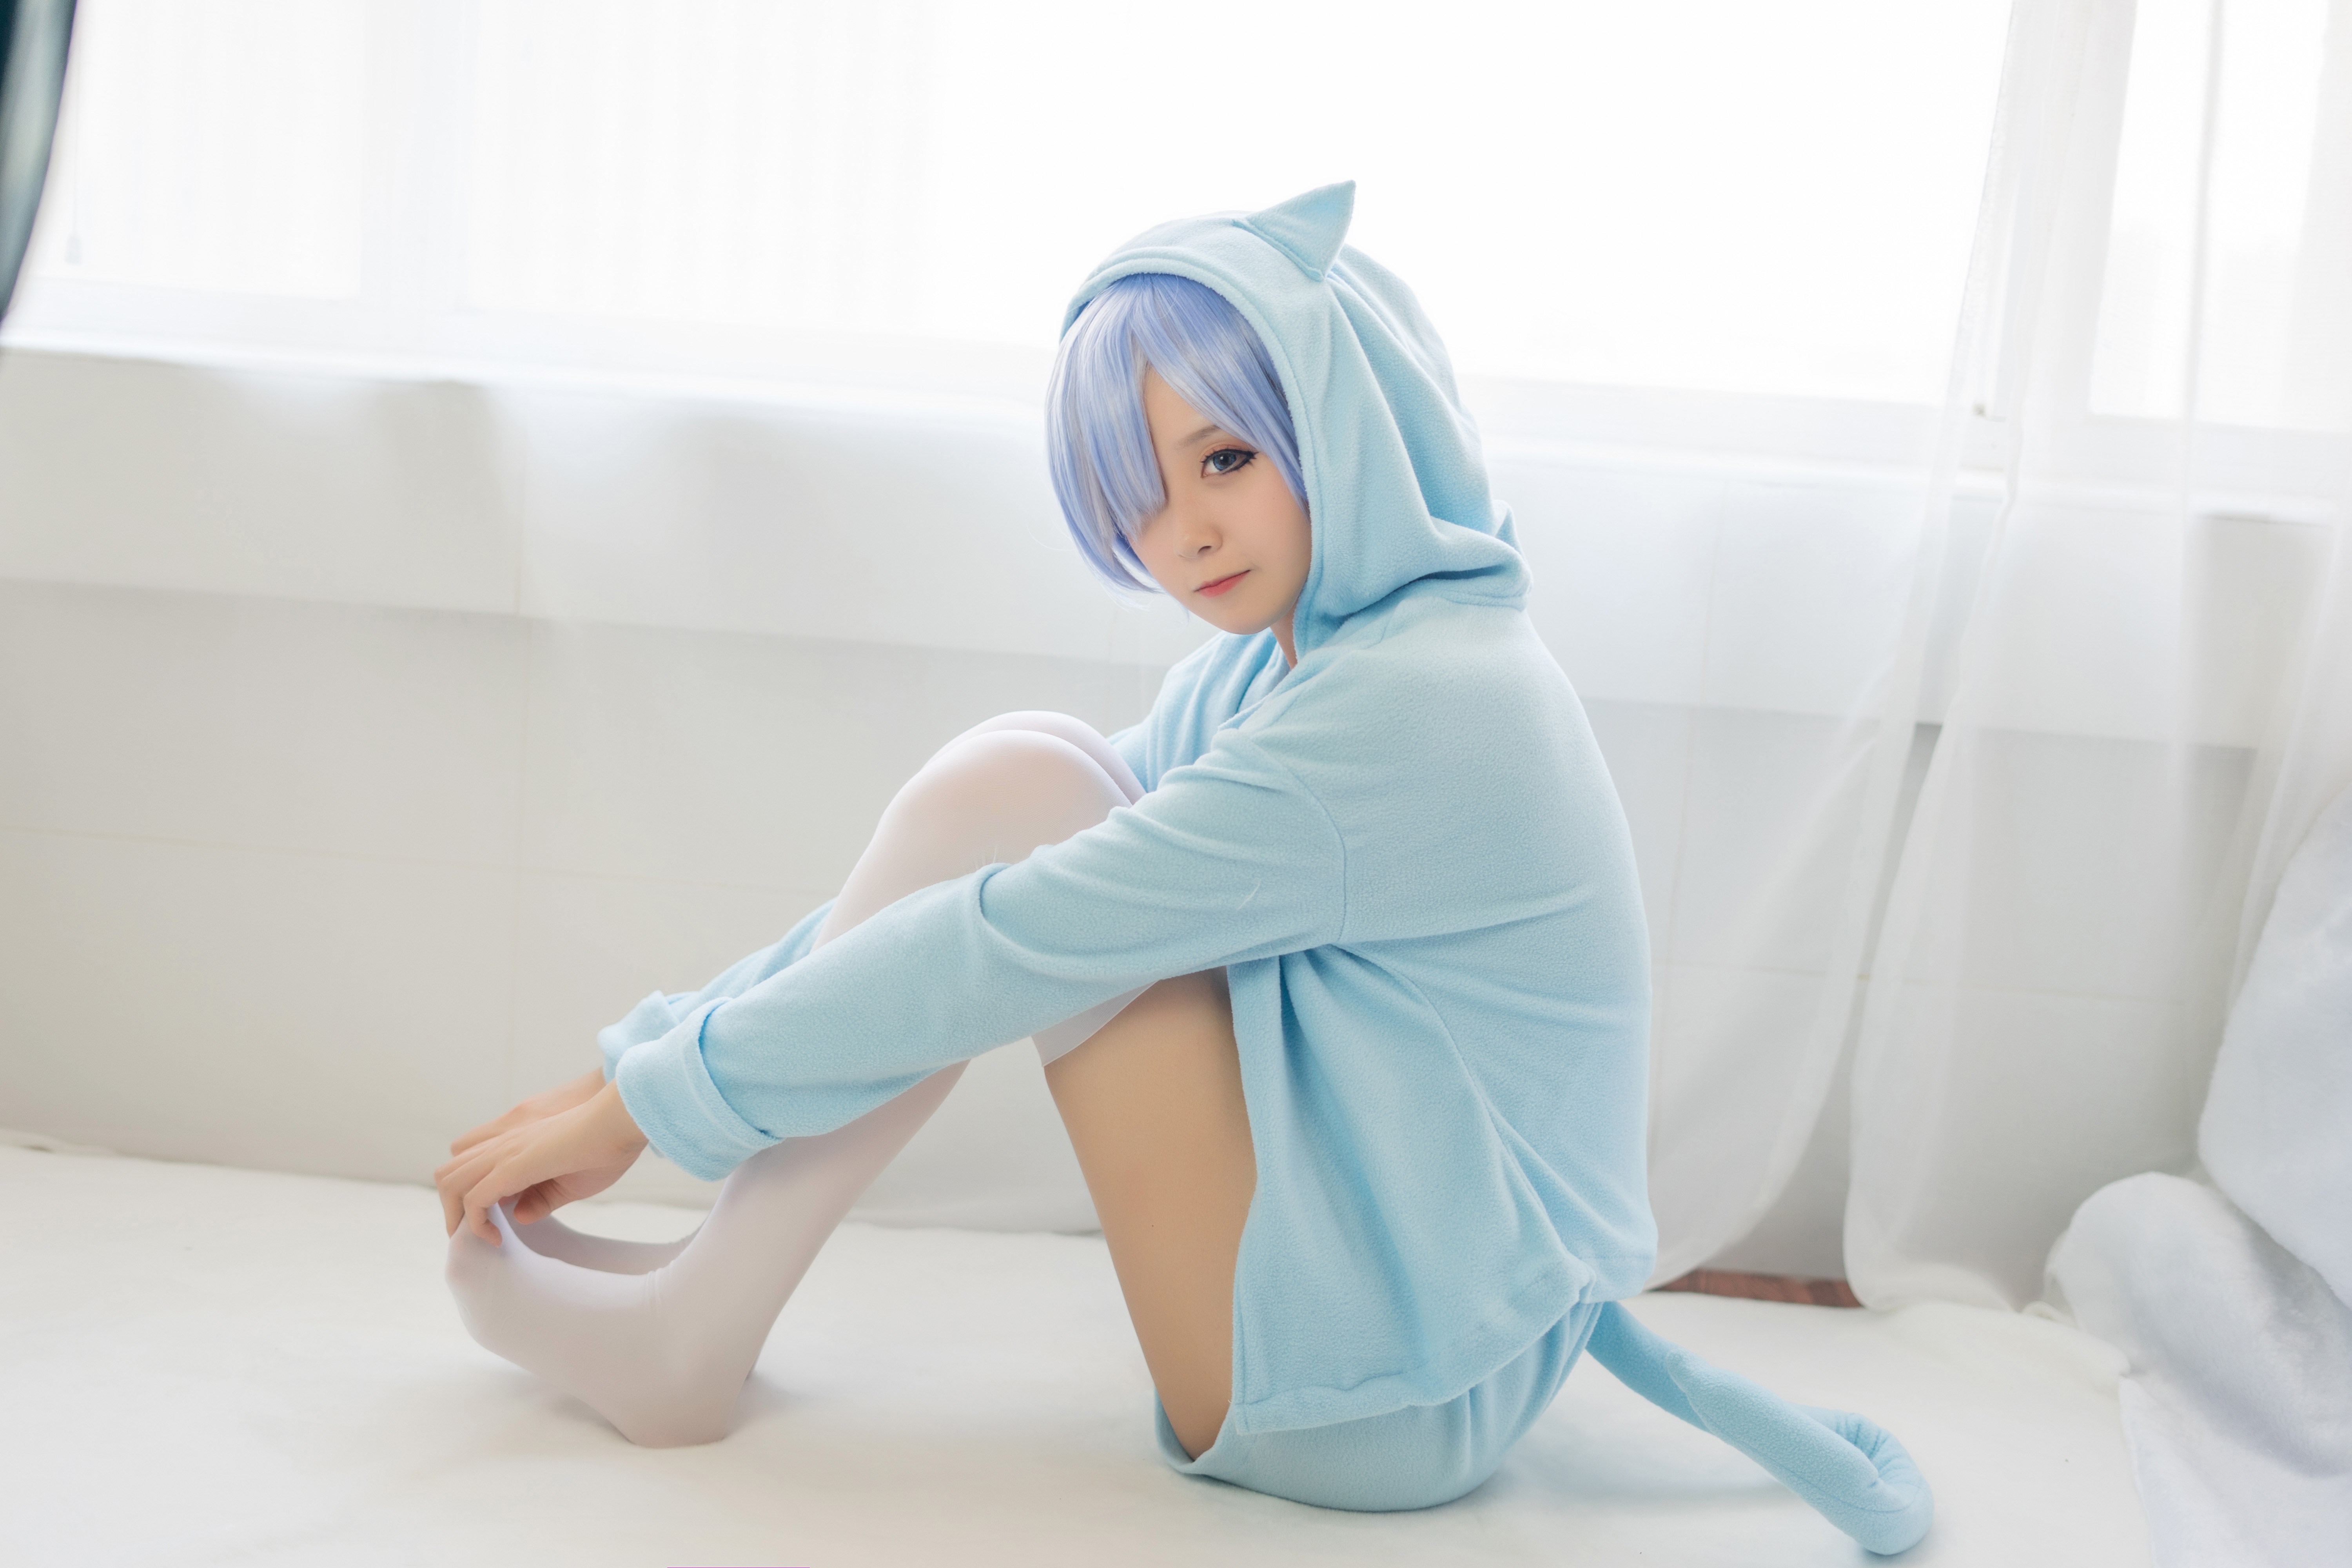 【兔玩映画】蕾姆的蓝色睡衣 兔玩映画 第20张